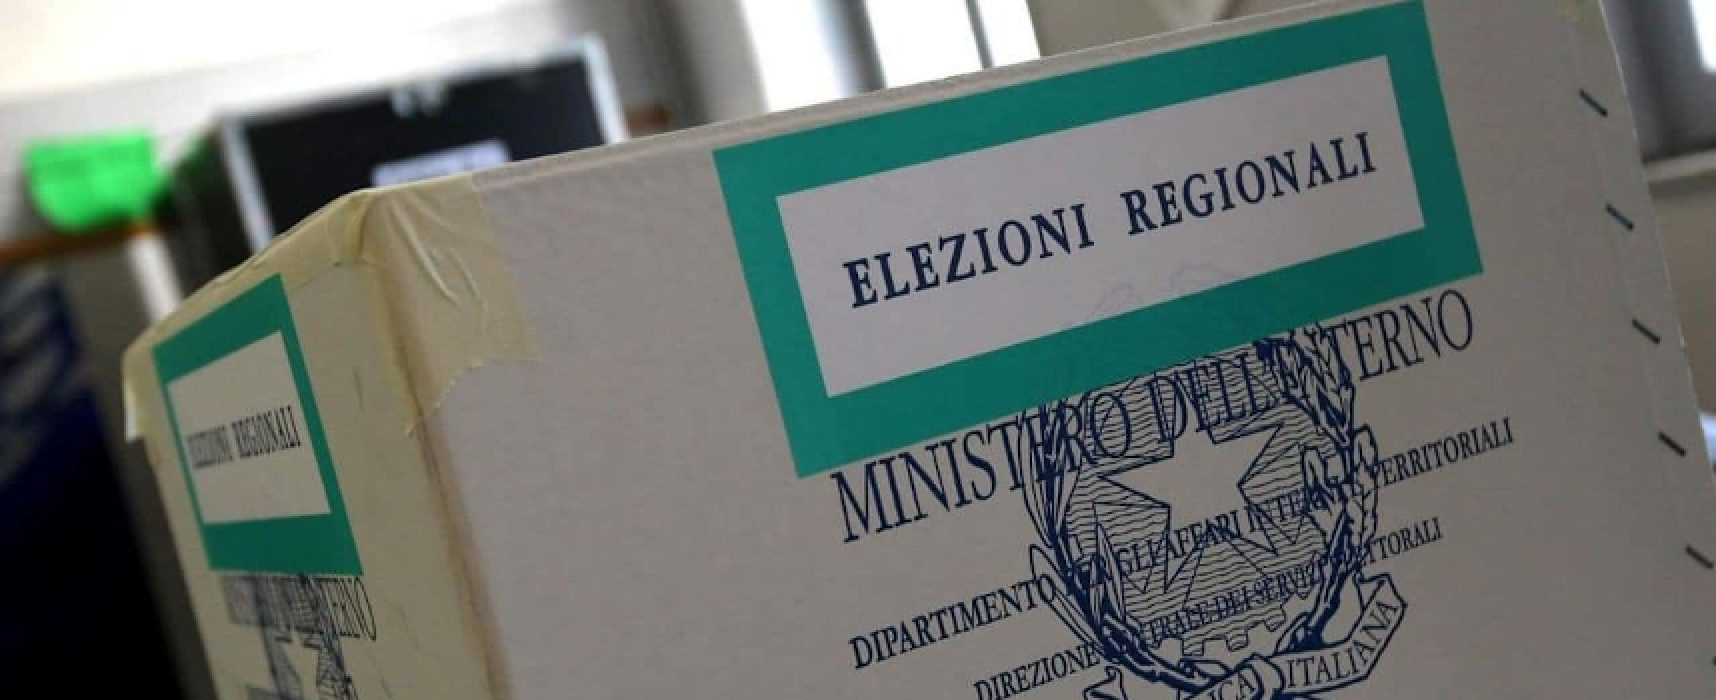 Elezioni Regionali 2020, aggiornamento albo scrutatori fino al 31 gennaio